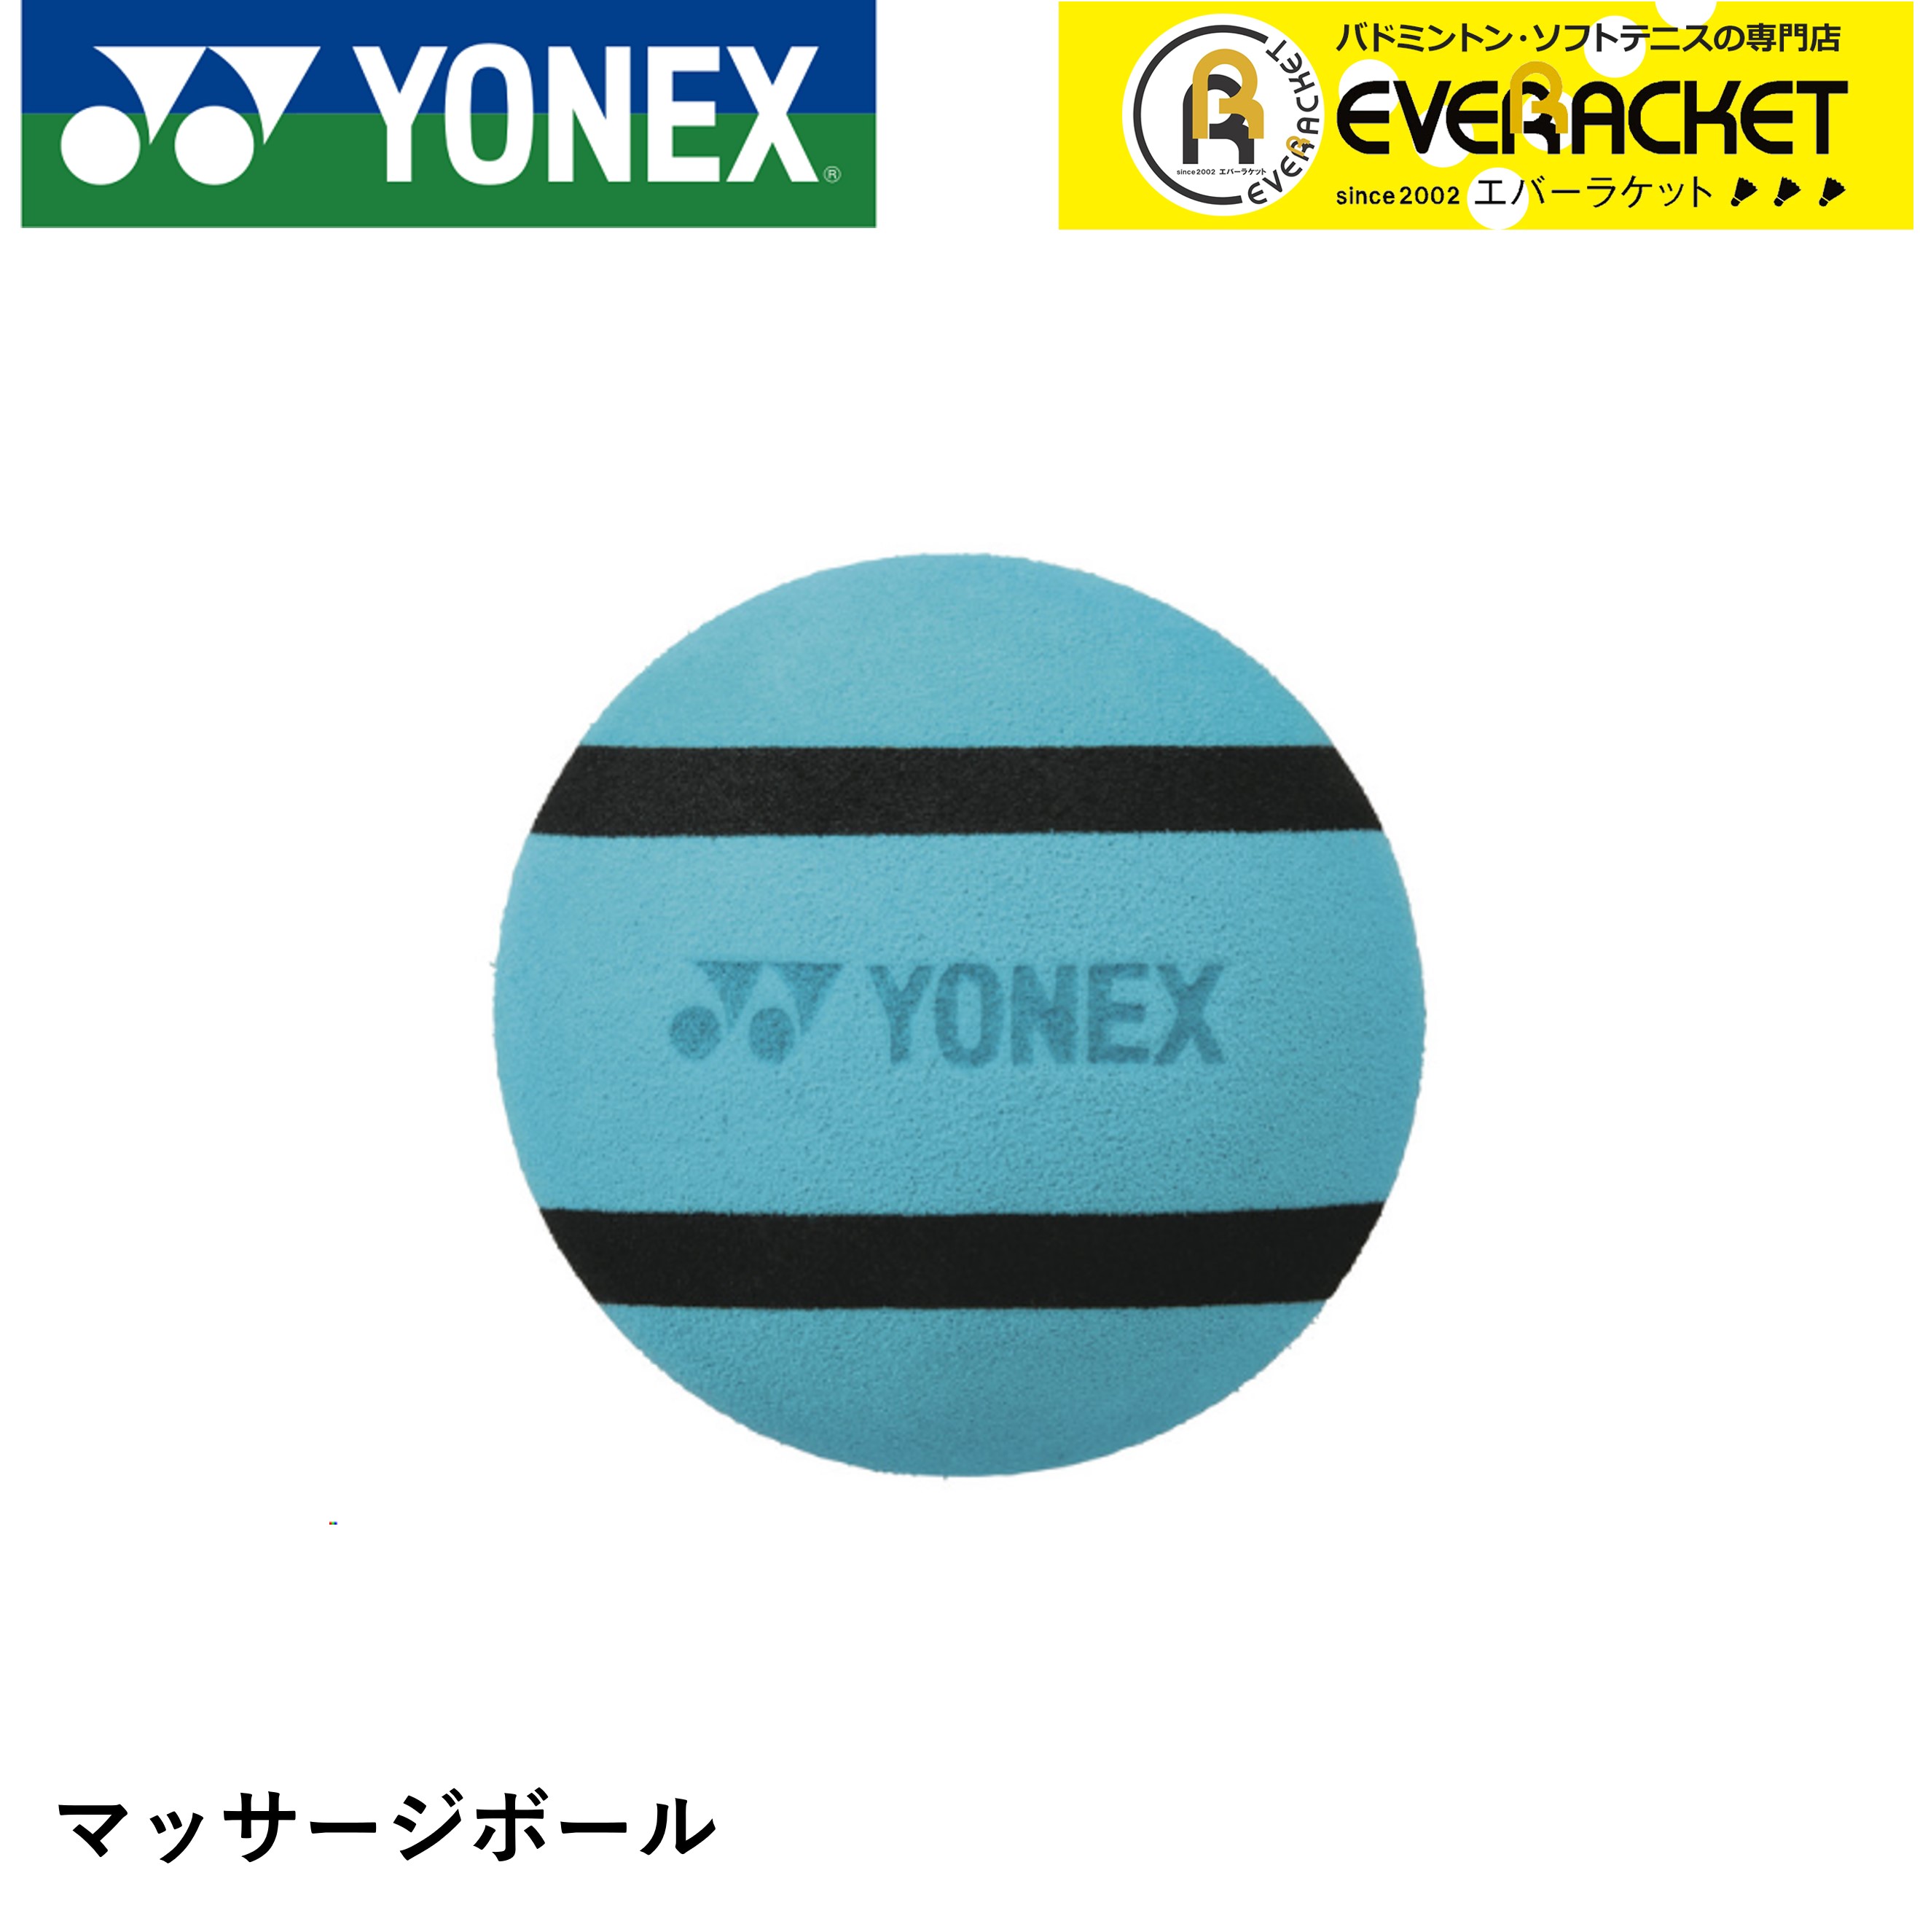 ヨネックス YONEX アクセサリー マッサージボール AC518 バドミントン・テニス